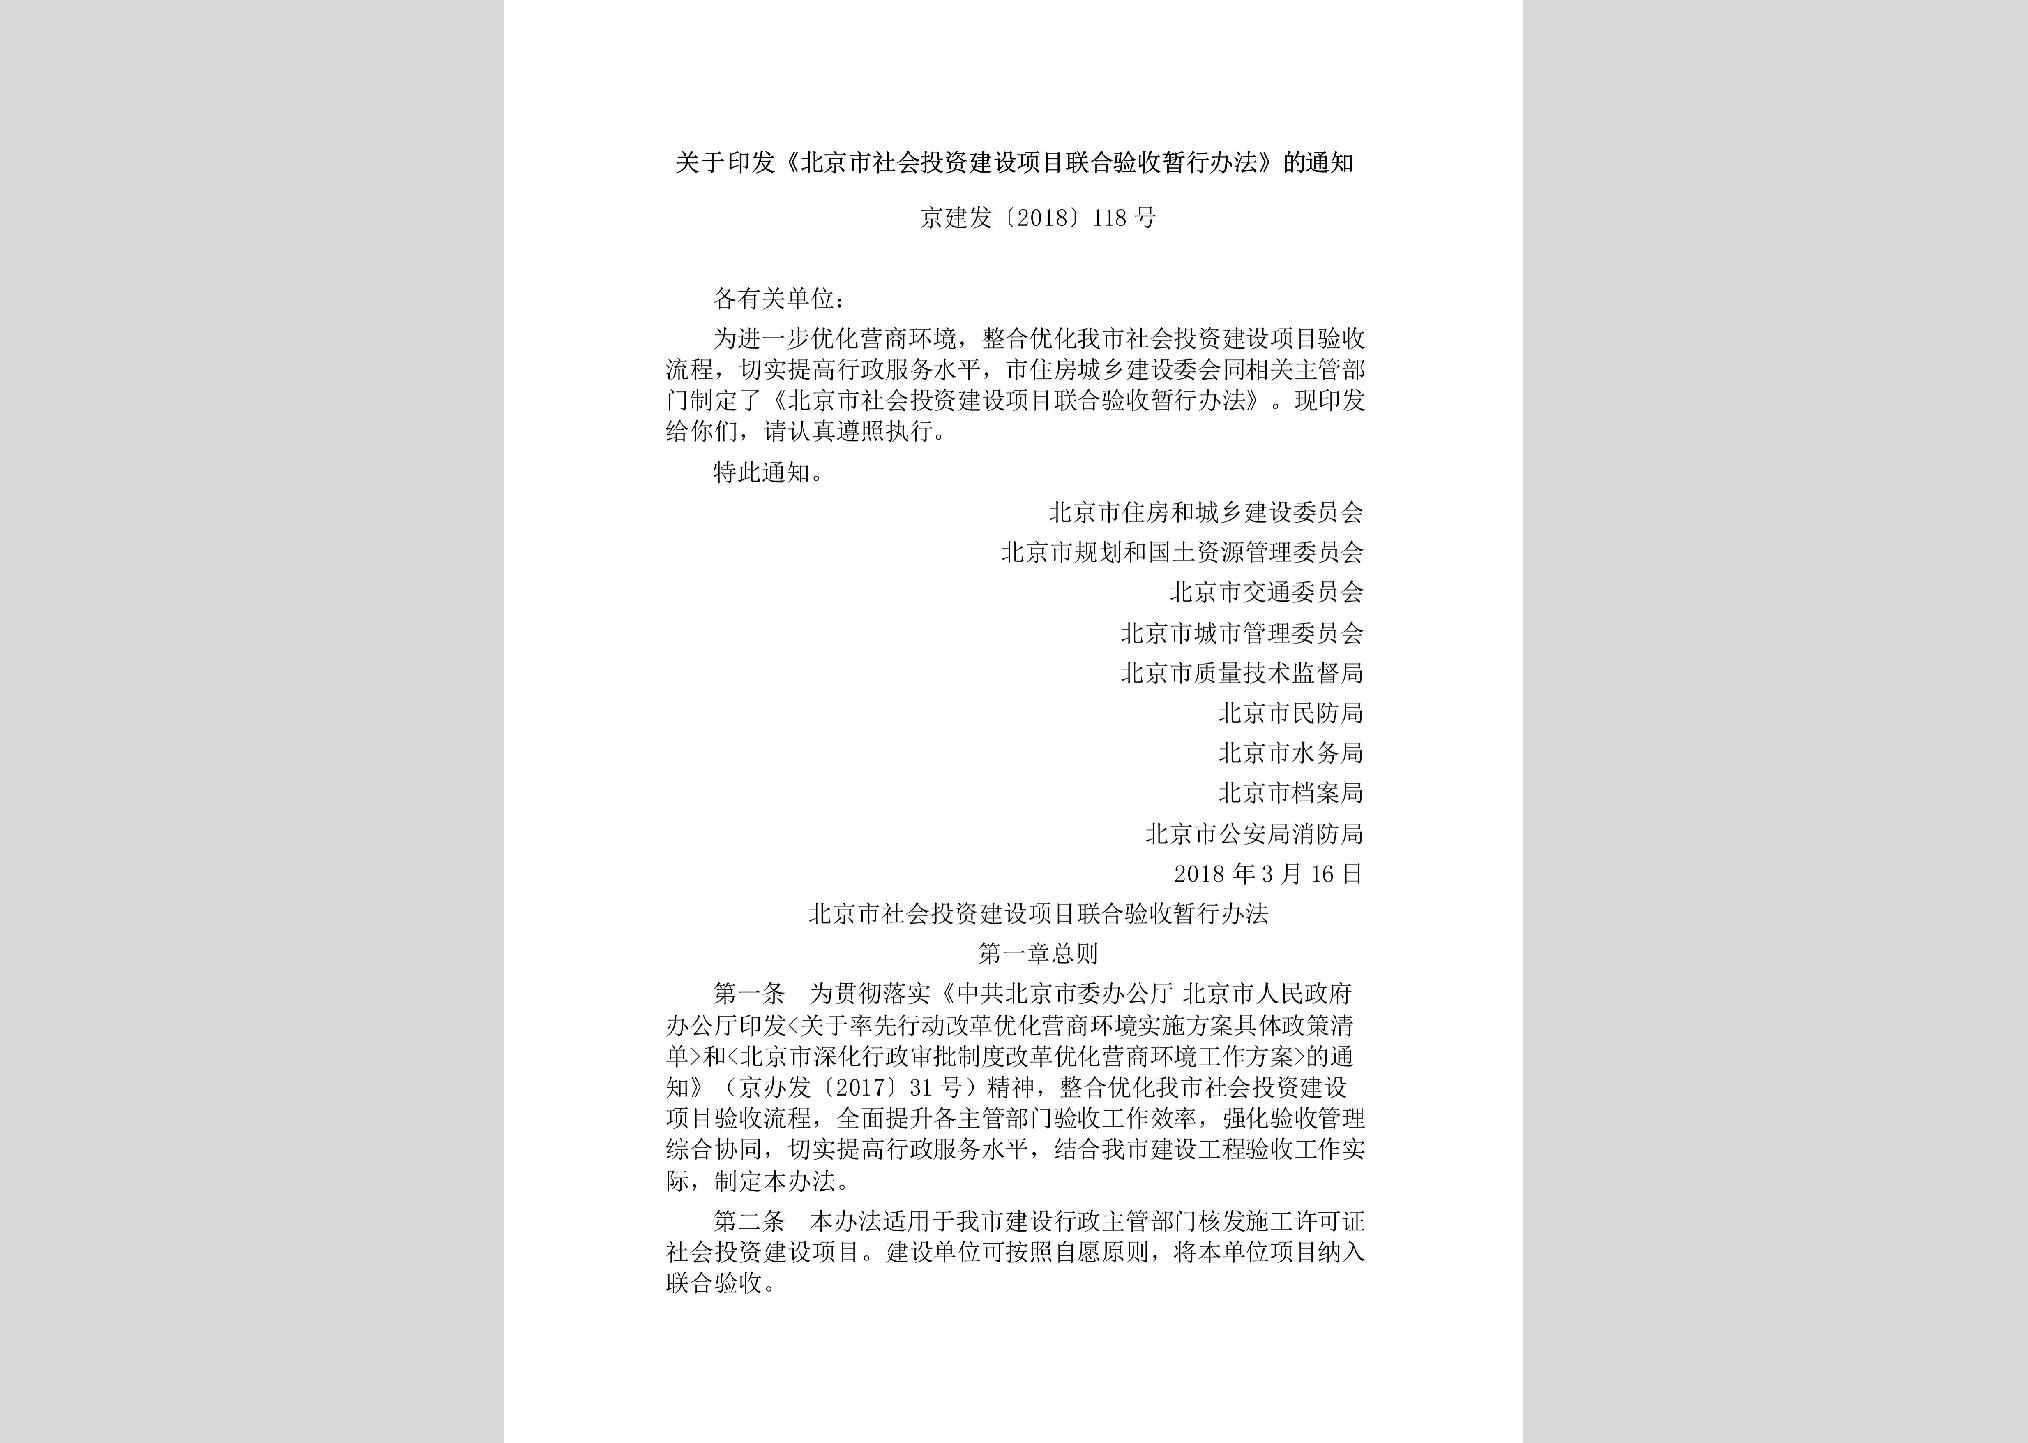 京建发[2018]118号：关于印发《北京市社会投资建设项目联合验收暂行办法》的通知